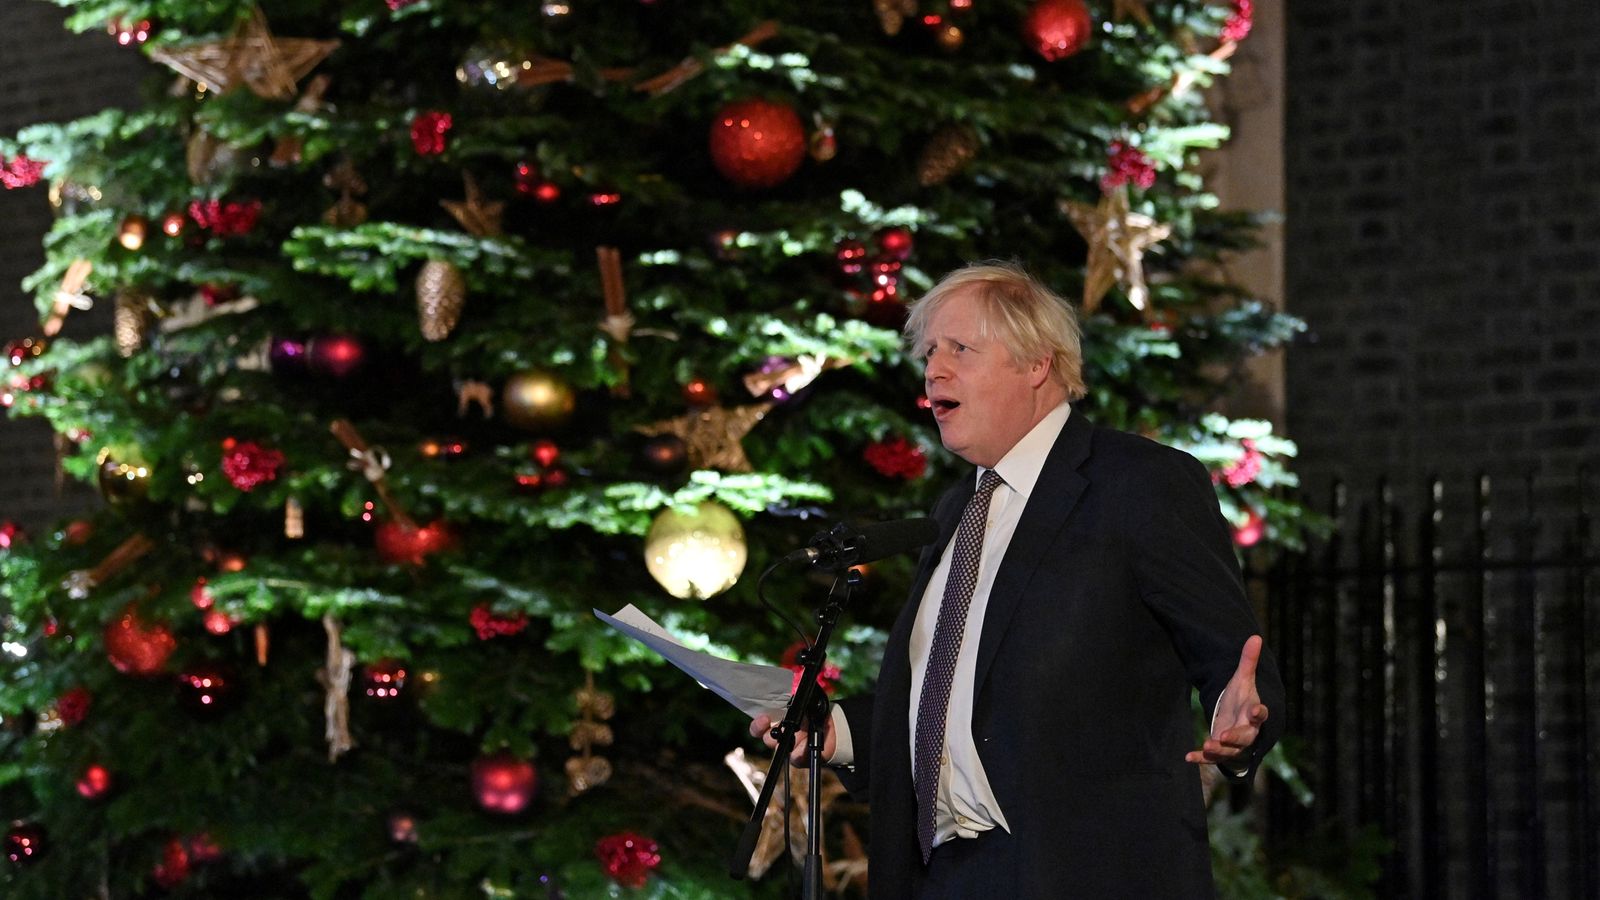 COVID-19: Jumlah pesta yang diadakan di Downing Street menjelang Natal tahun lalu, Sky News mengerti |  Berita Inggris